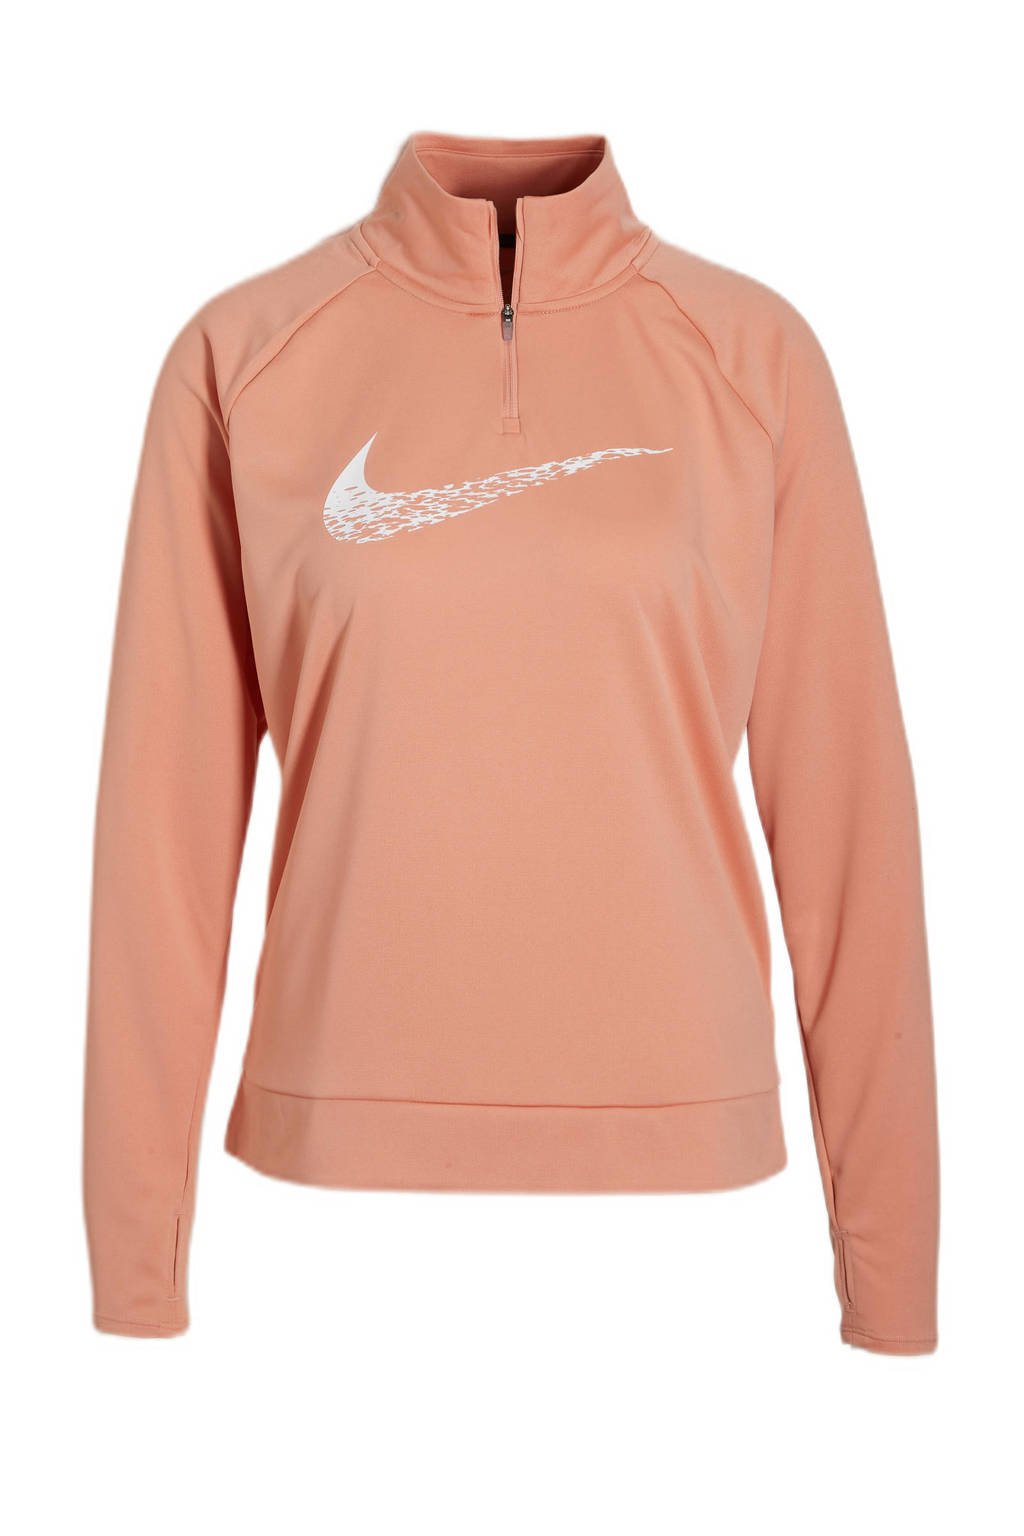 Nike hardloopsweater lichtroze